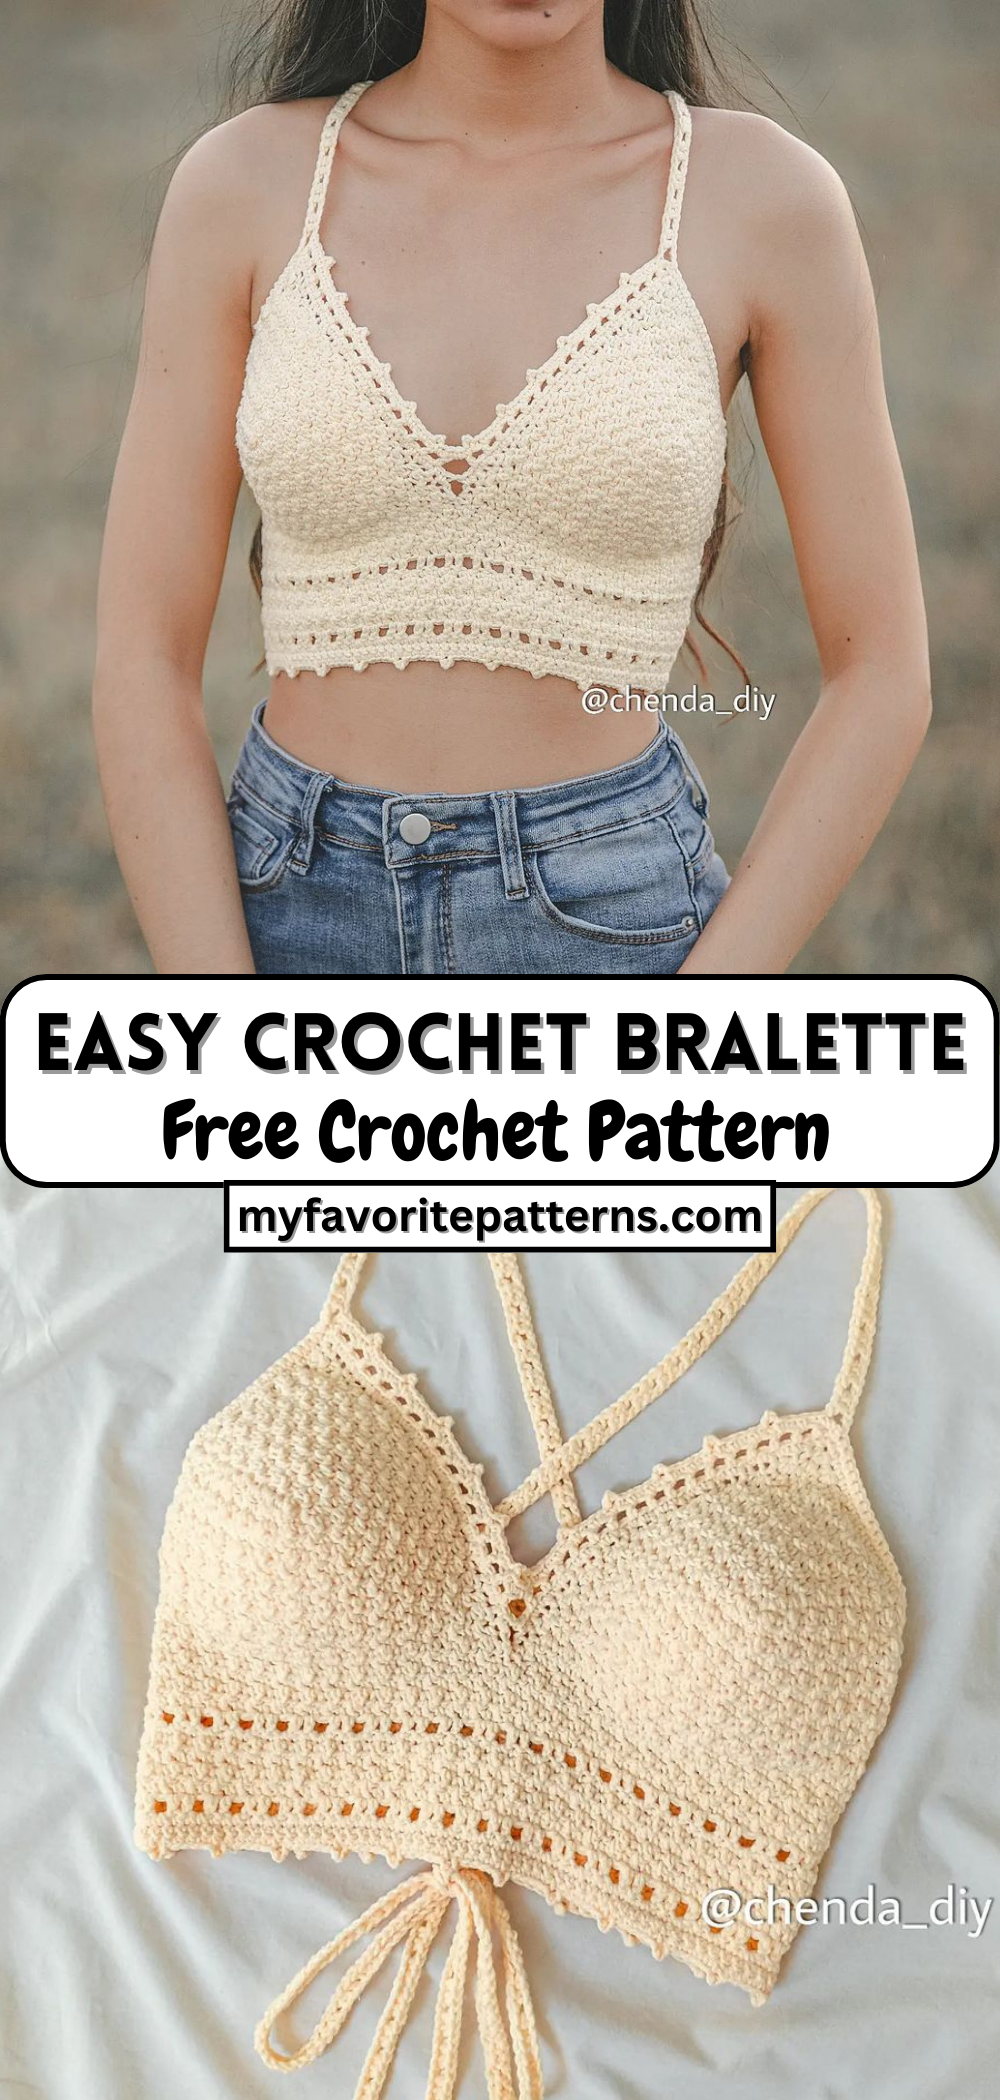 Easy Crochet Bralette Tutorial - Free Crochet Pattern